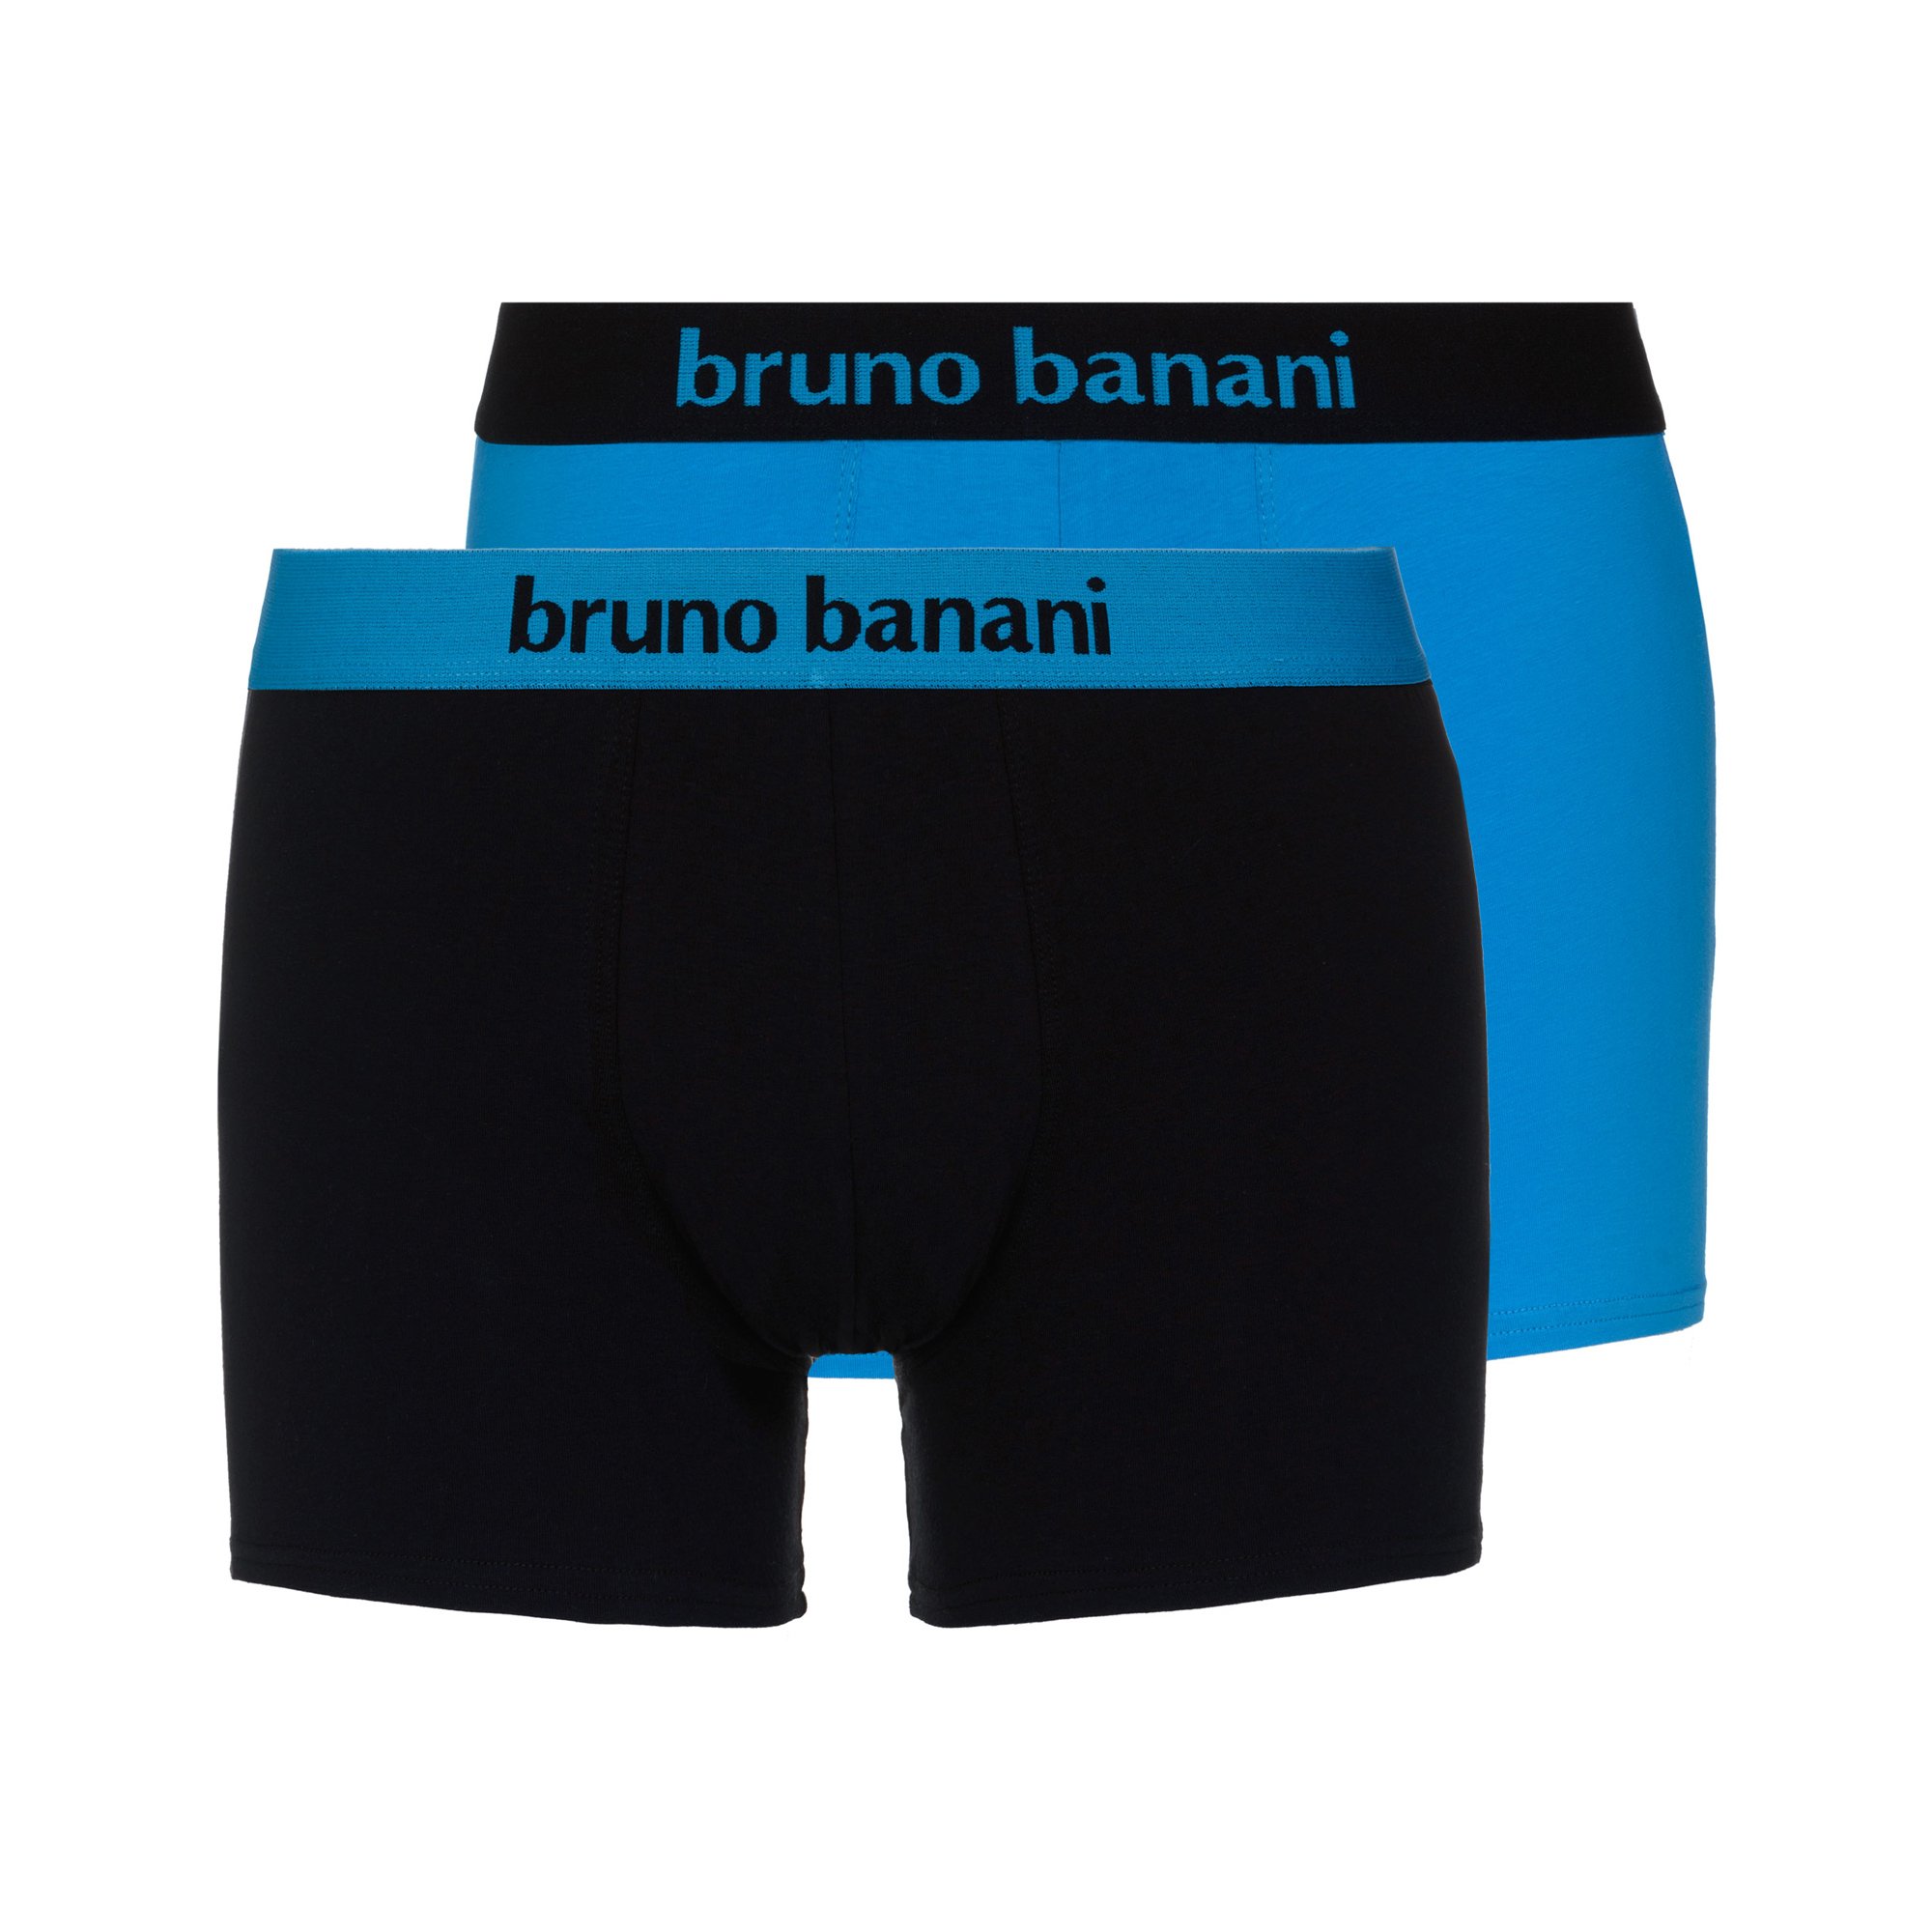 bruno banani - Flowing - Short - 2er Pack (7 Aqua Blue / Schwarz)